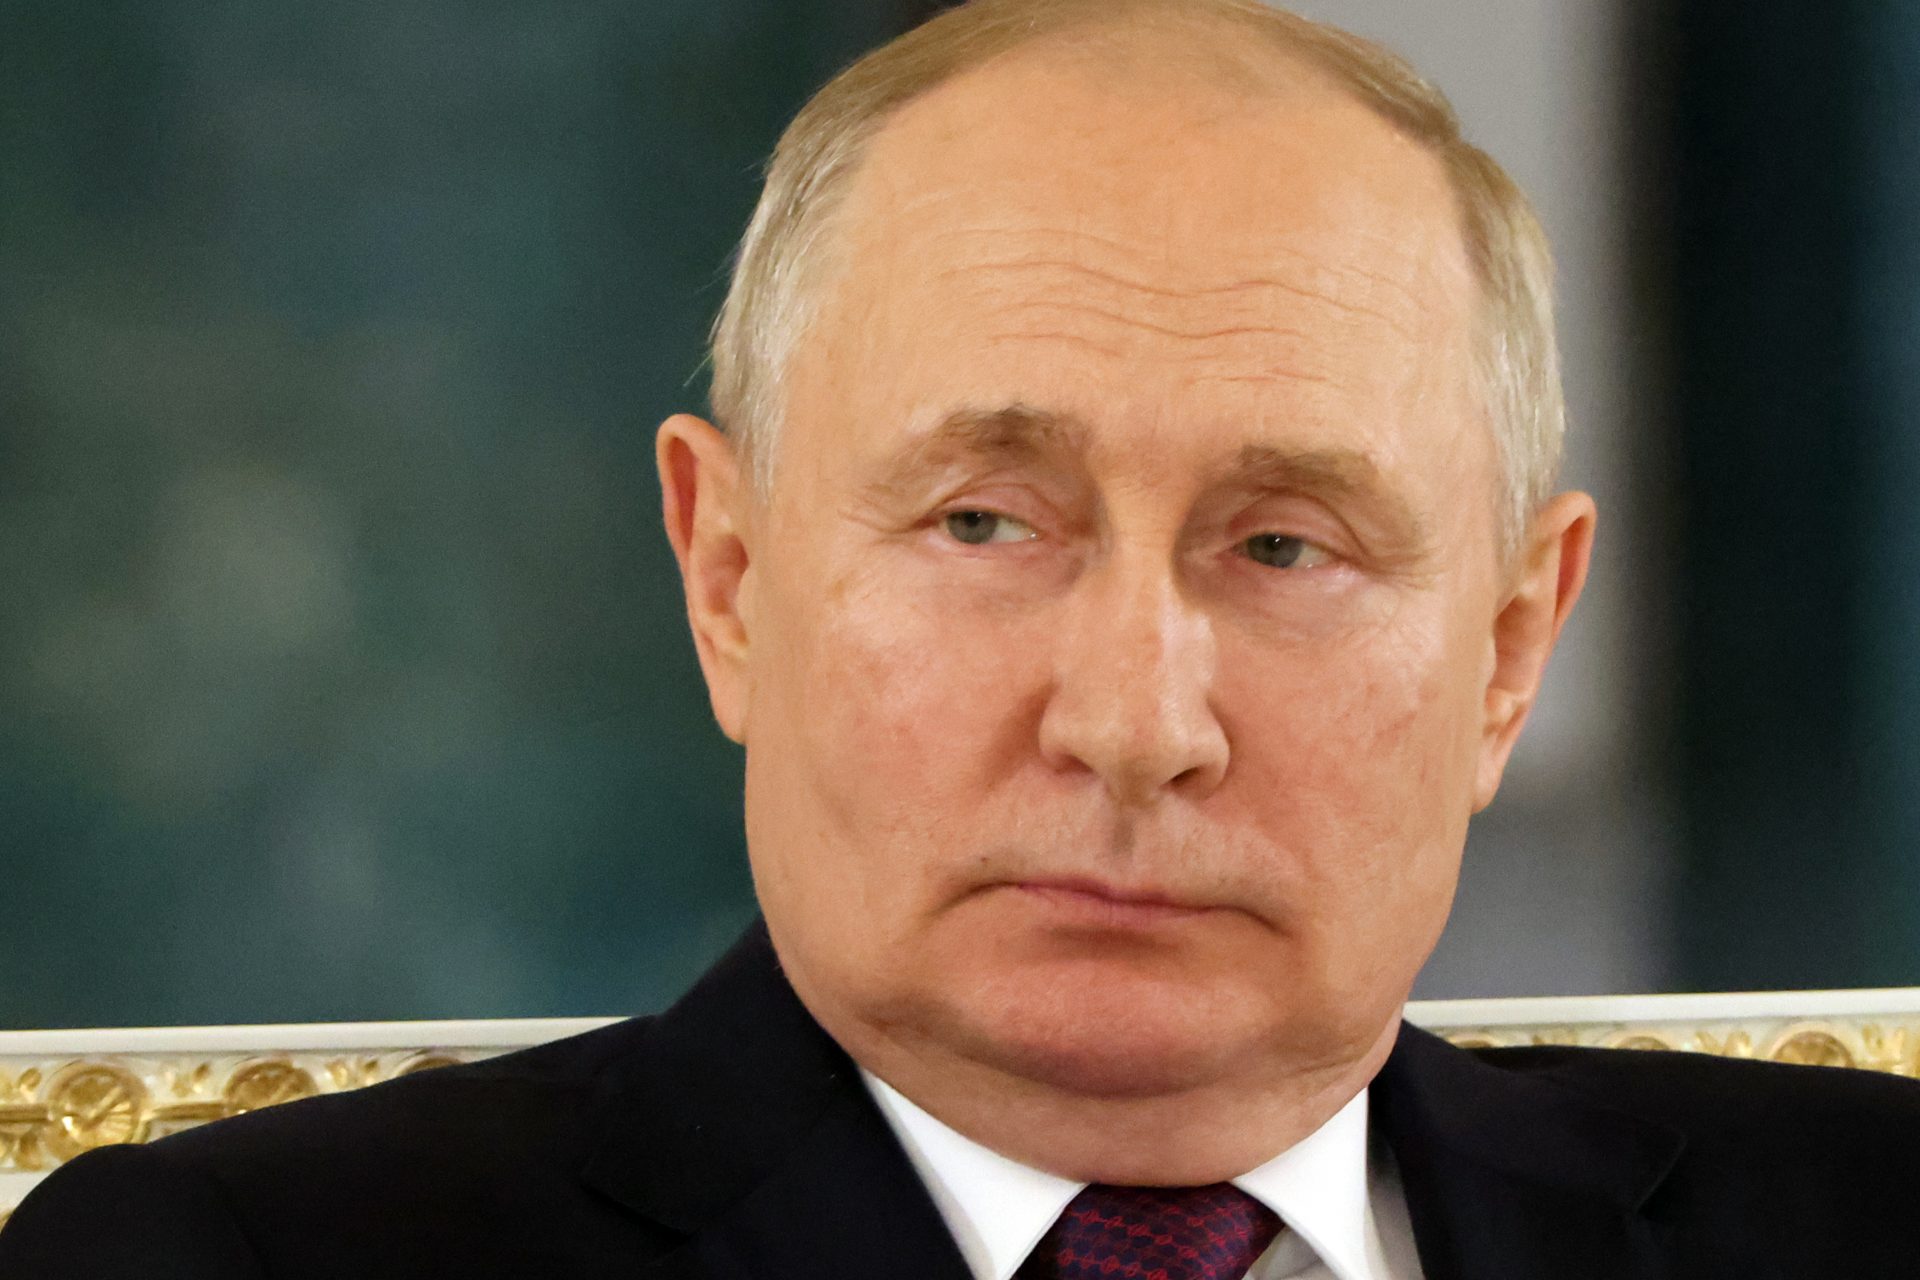 Combien de temps Poutine a-t-il fait attendre les dirigeants du monde dans le passé ? 